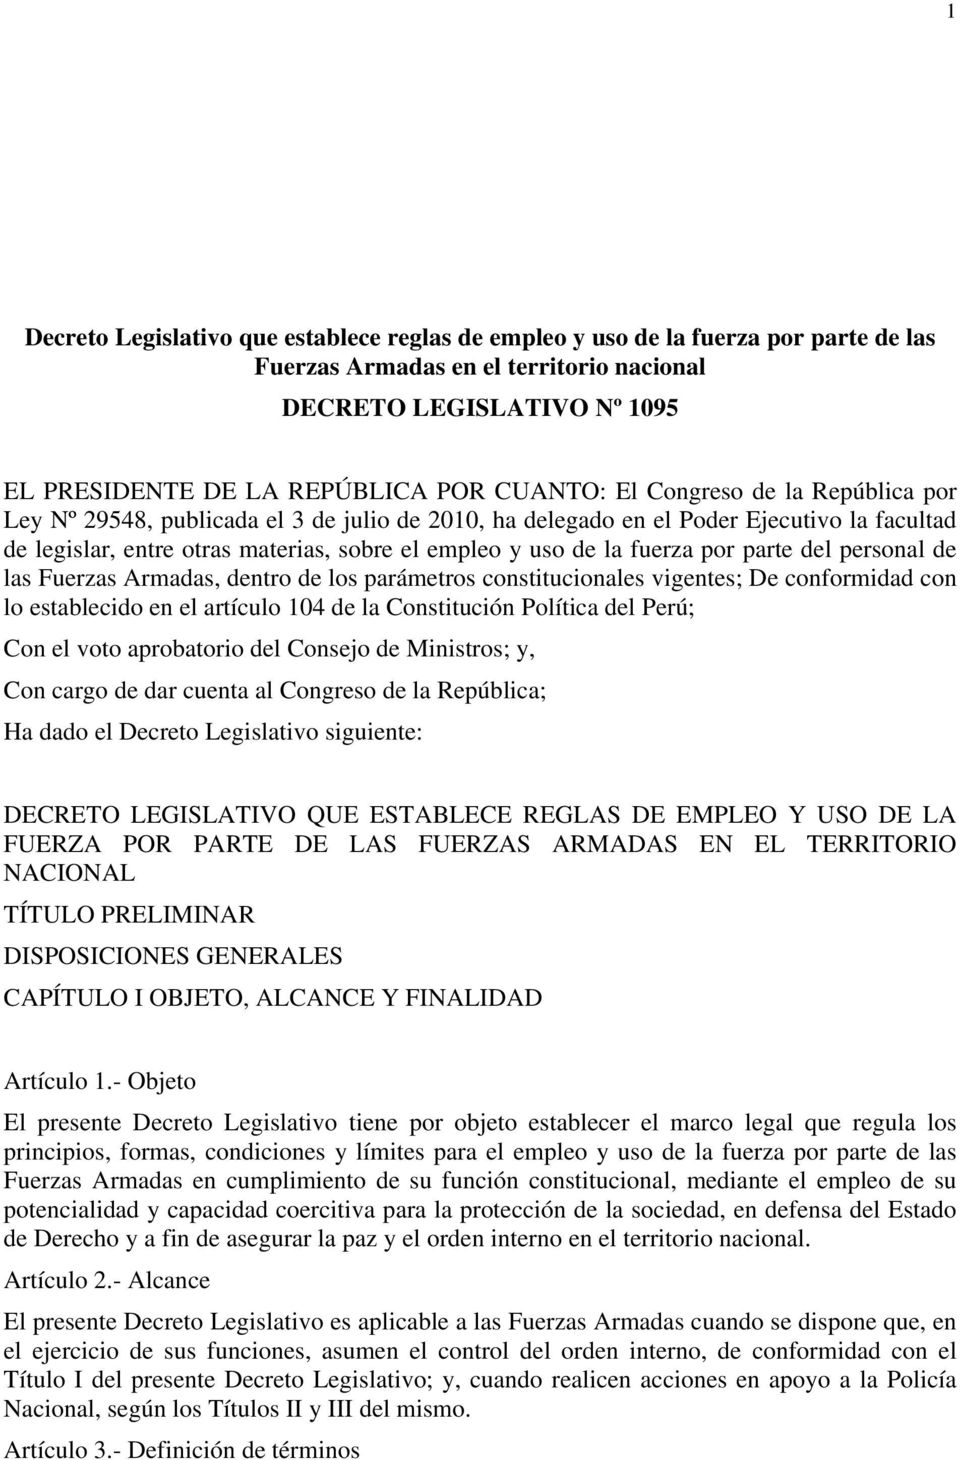 fuerza por parte del personal de las Fuerzas Armadas, dentro de los parámetros constitucionales vigentes; De conformidad con lo establecido en el artículo 104 de la Constitución Política del Perú;